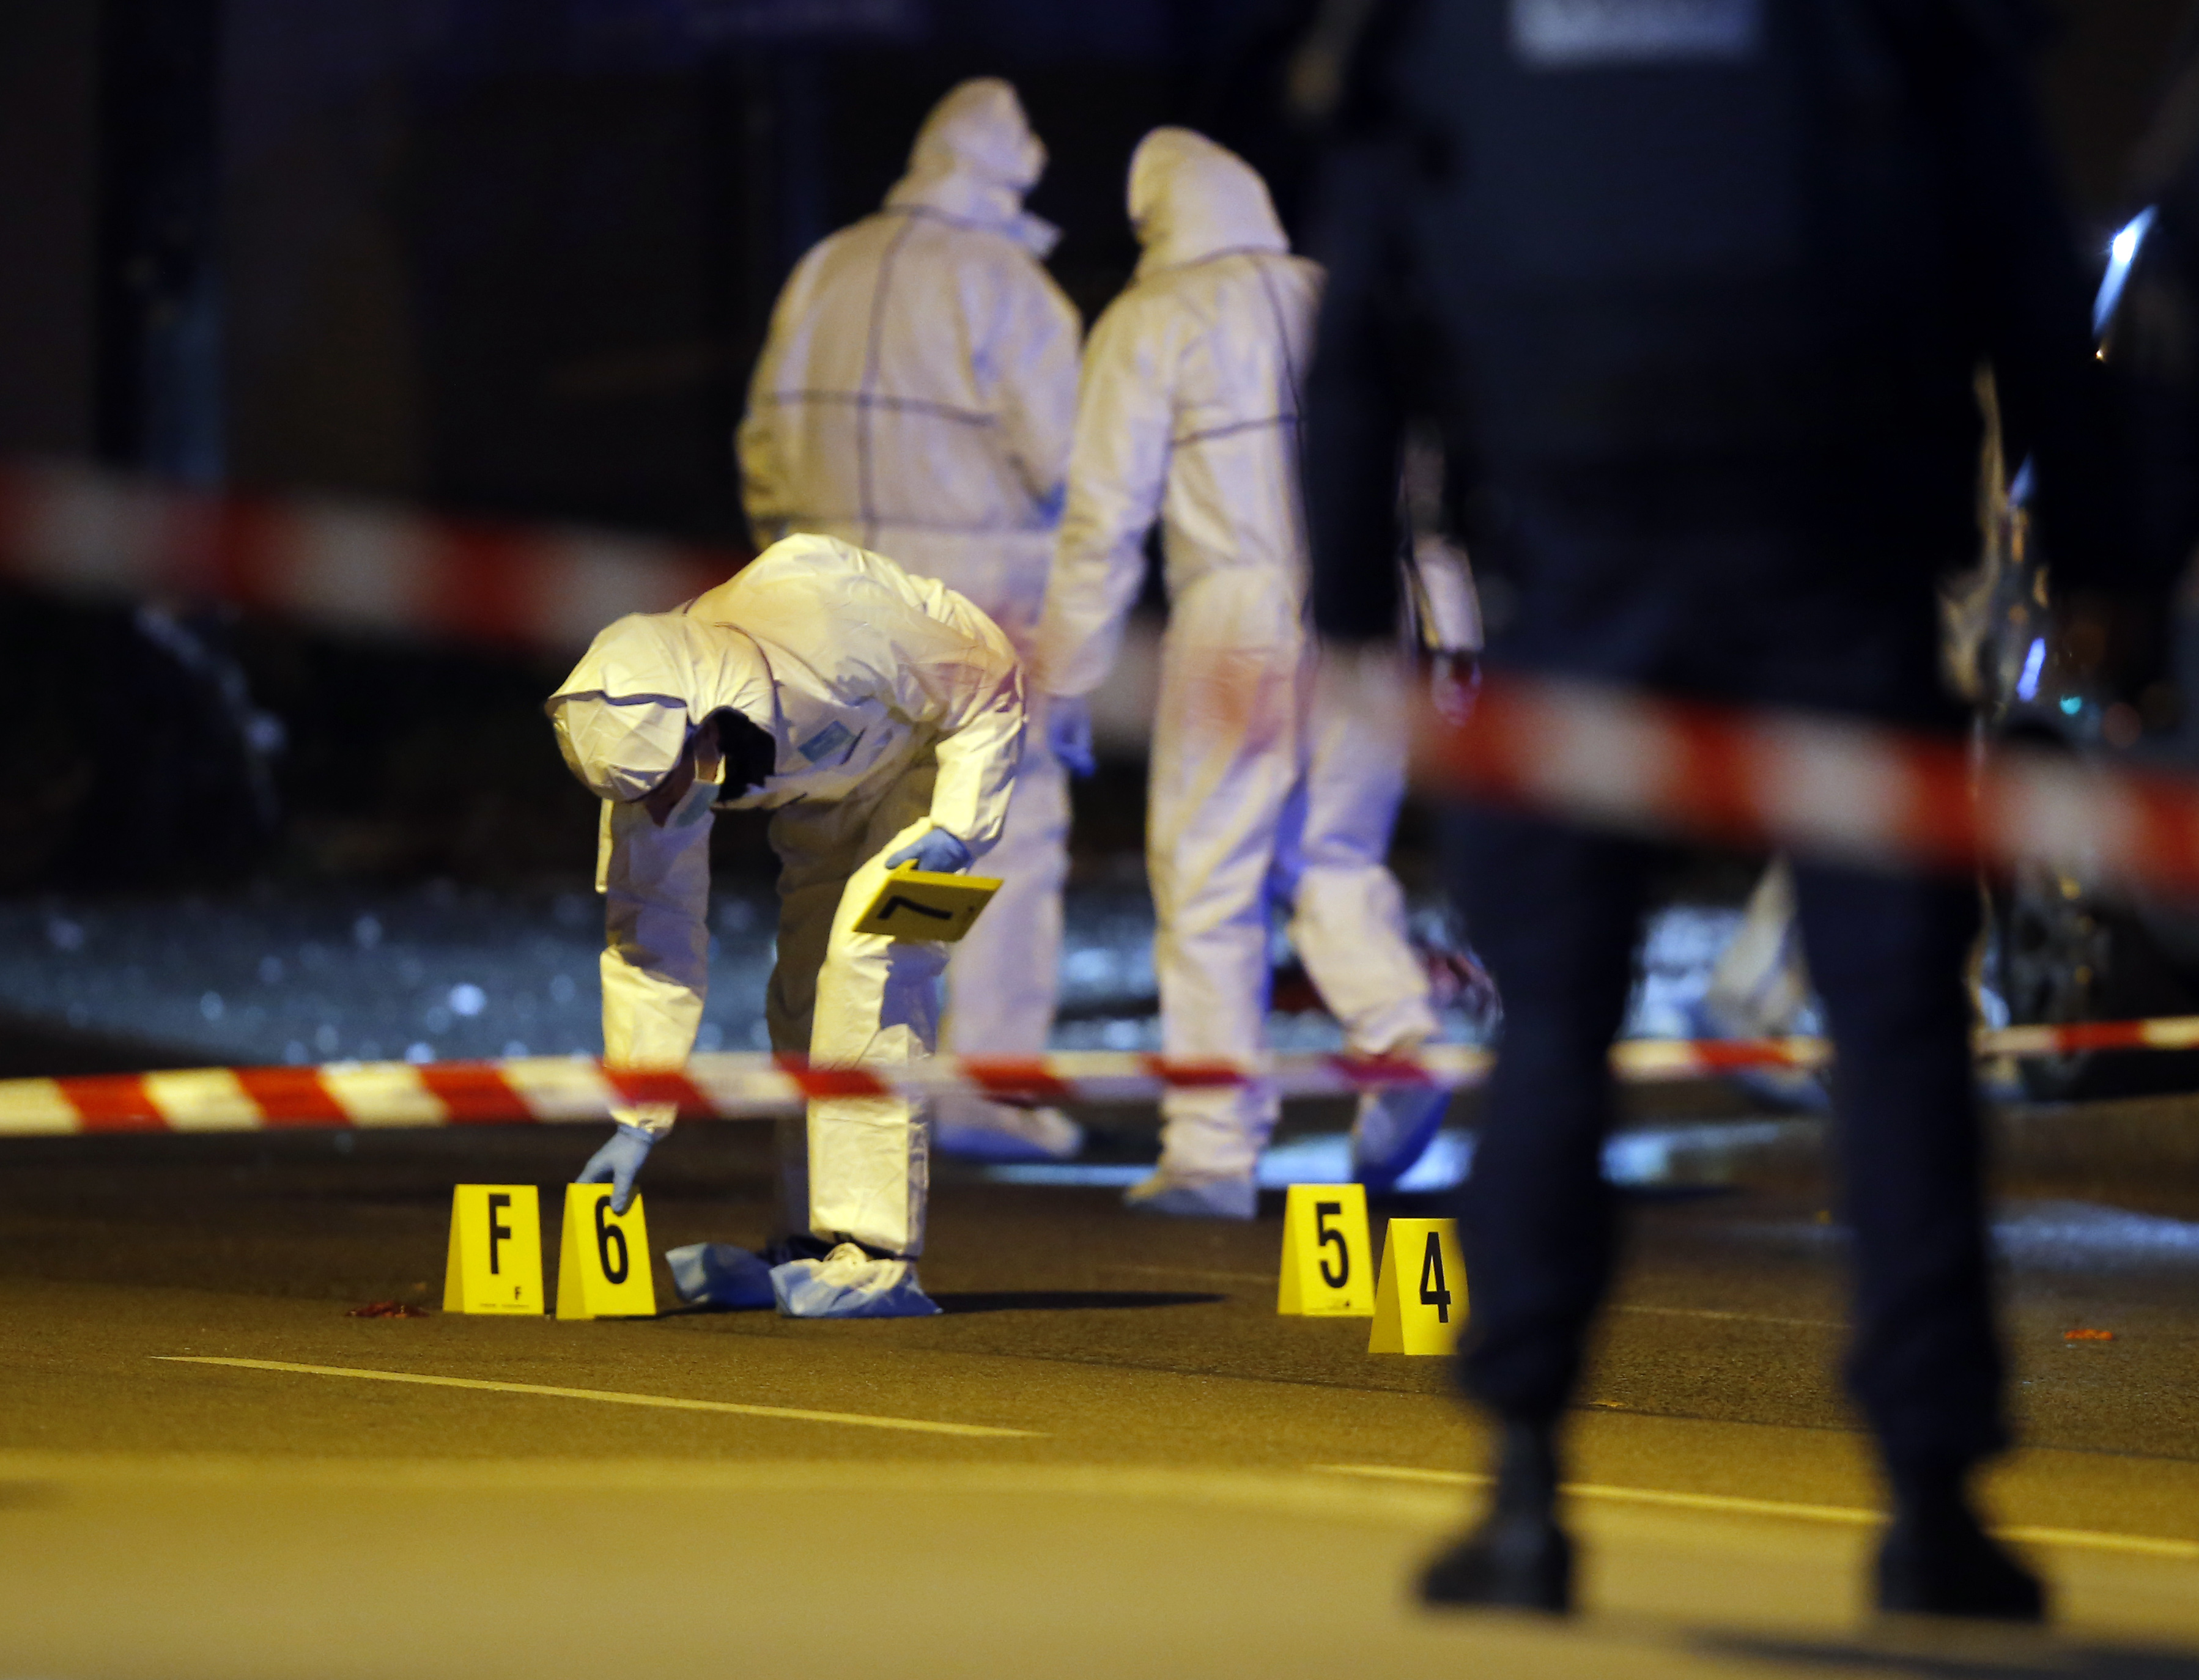 Cronología del terror: el minuto a minuto de una jornada fatídica en París